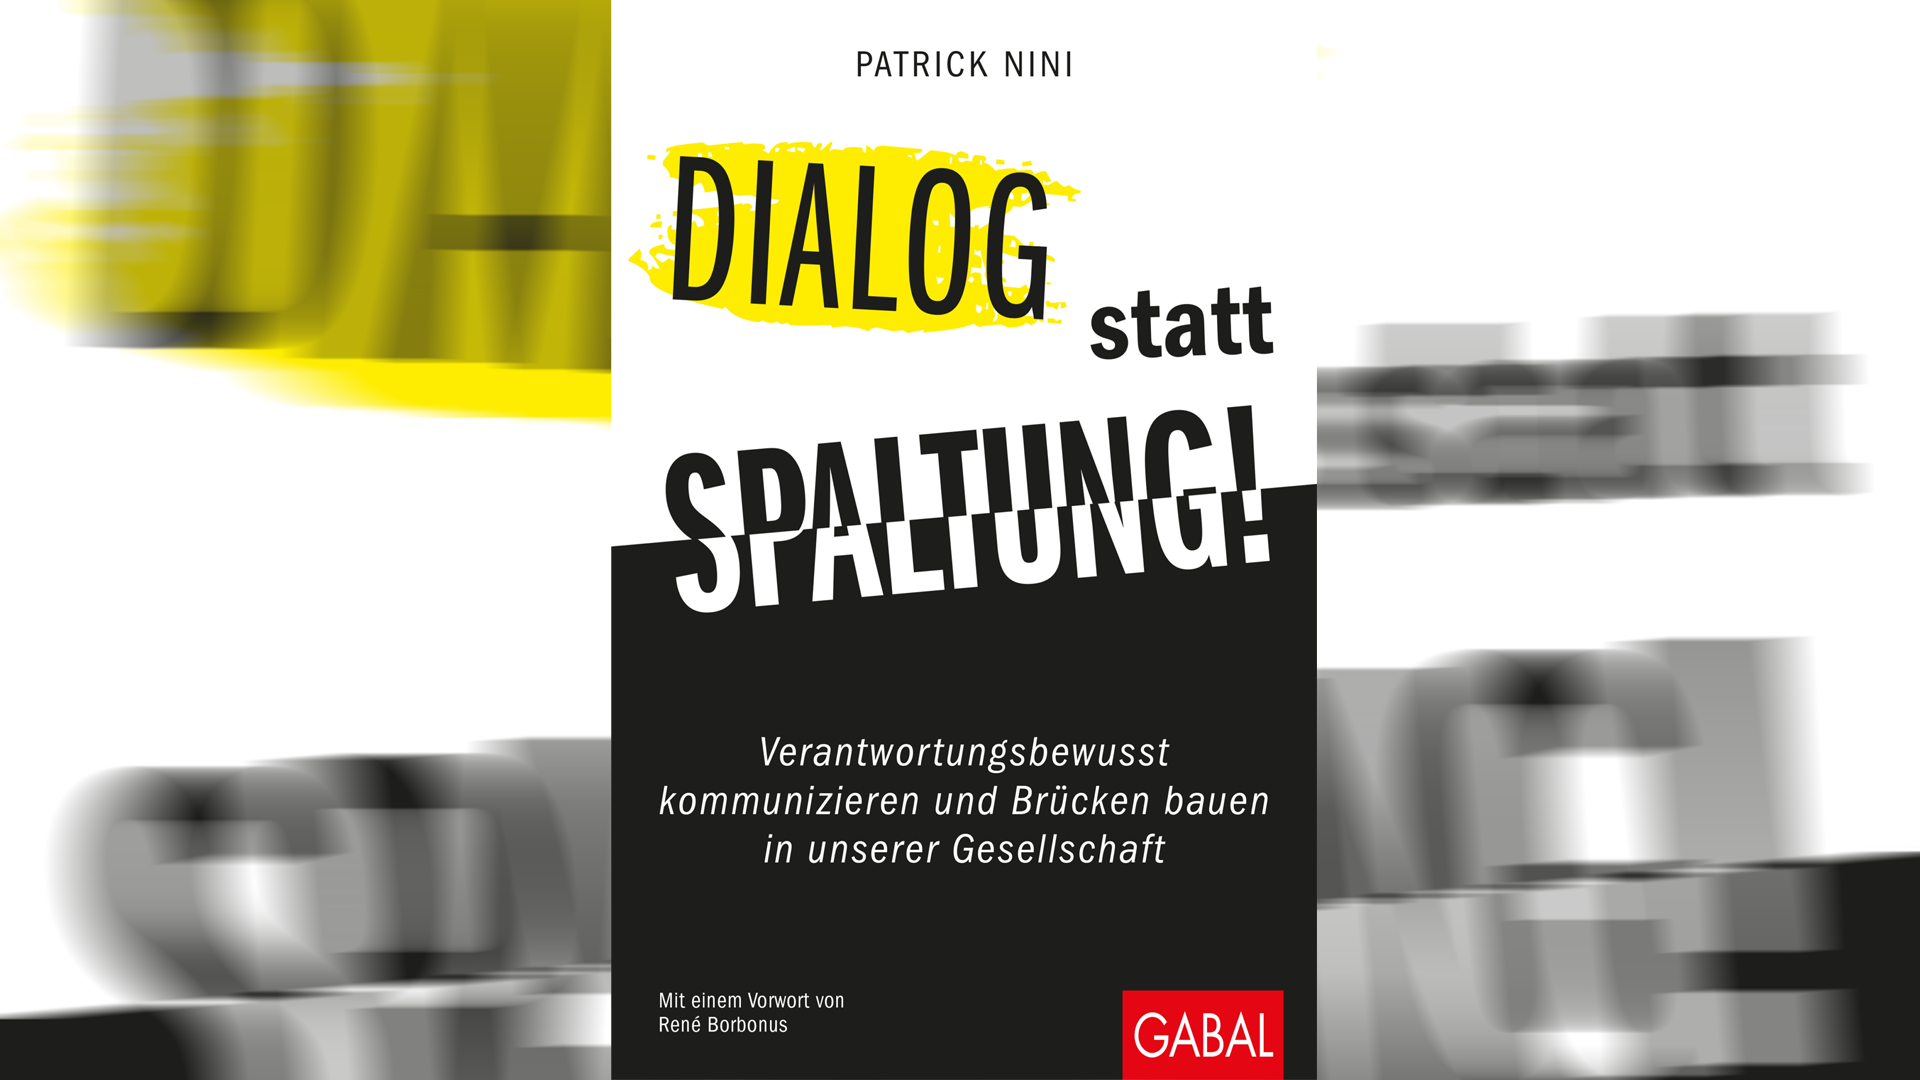 In seinem neuen Buch „Dialog statt Spaltung“ ruft Patrick Nini auf, verantwortungsbewusst zu kommunizieren und Brücken in der Gesellschaft zu bauen